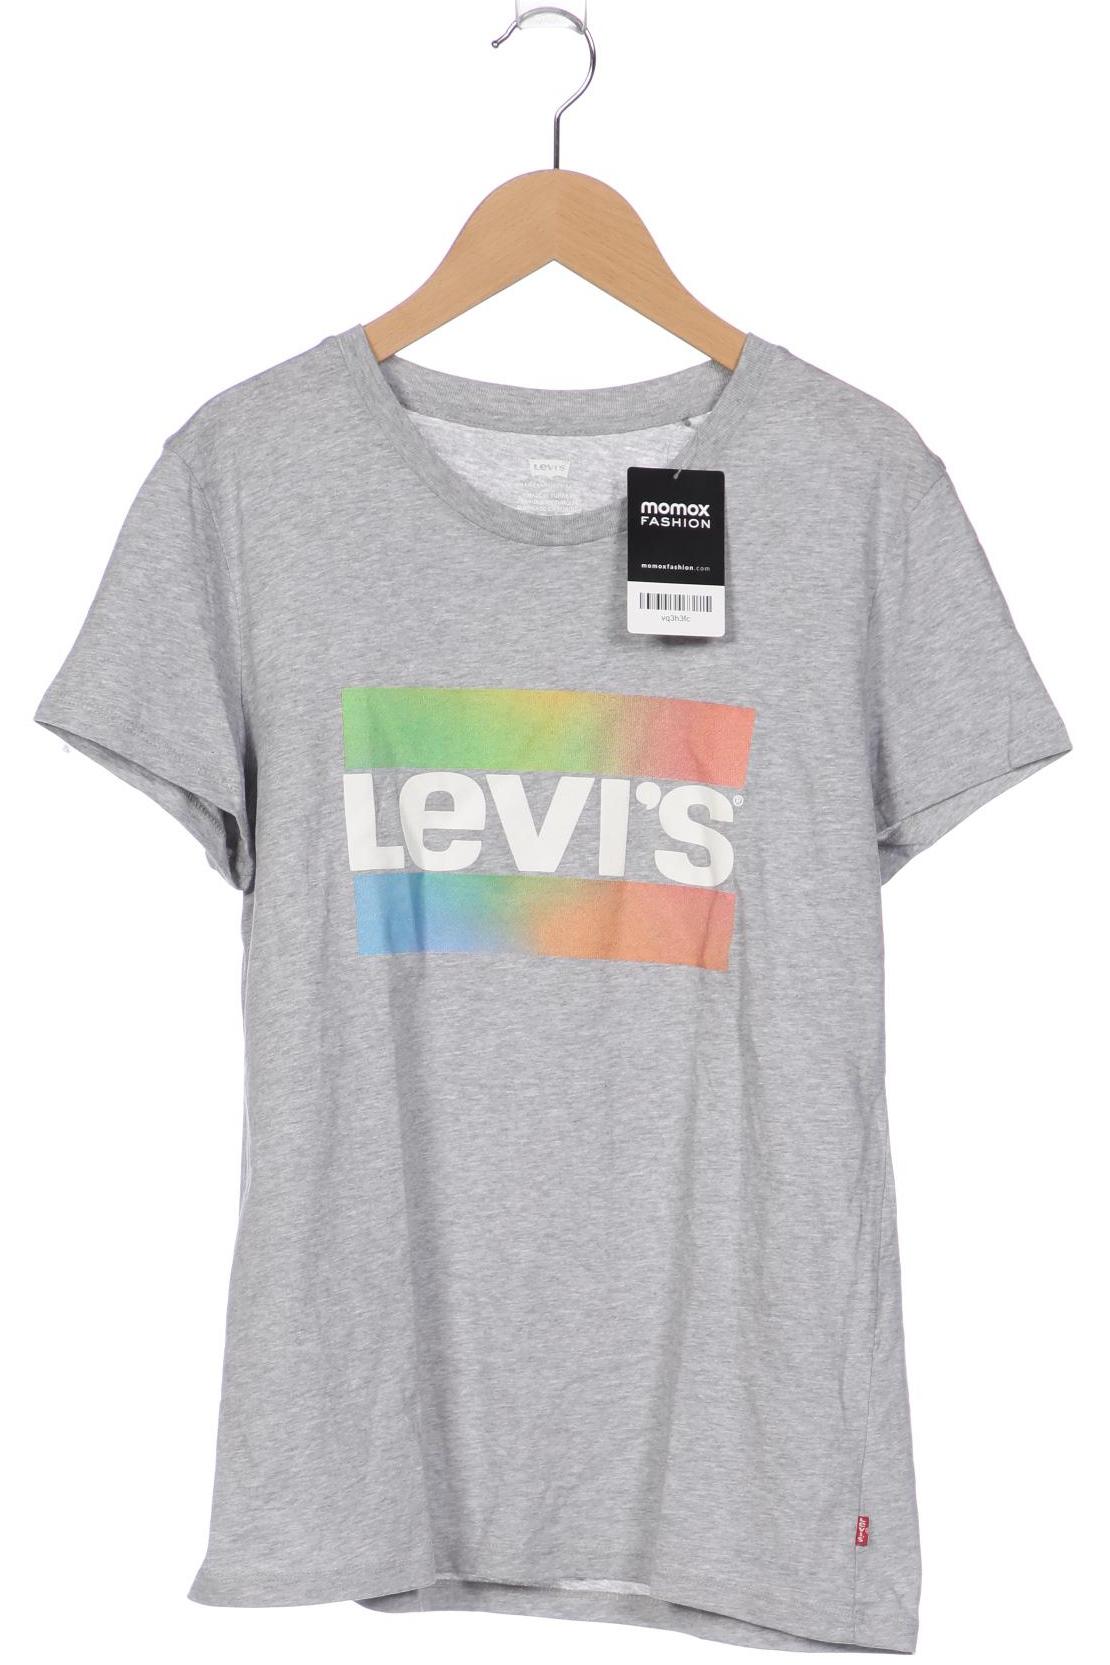 Levis Damen T-Shirt, grau, Gr. 134 von Levis